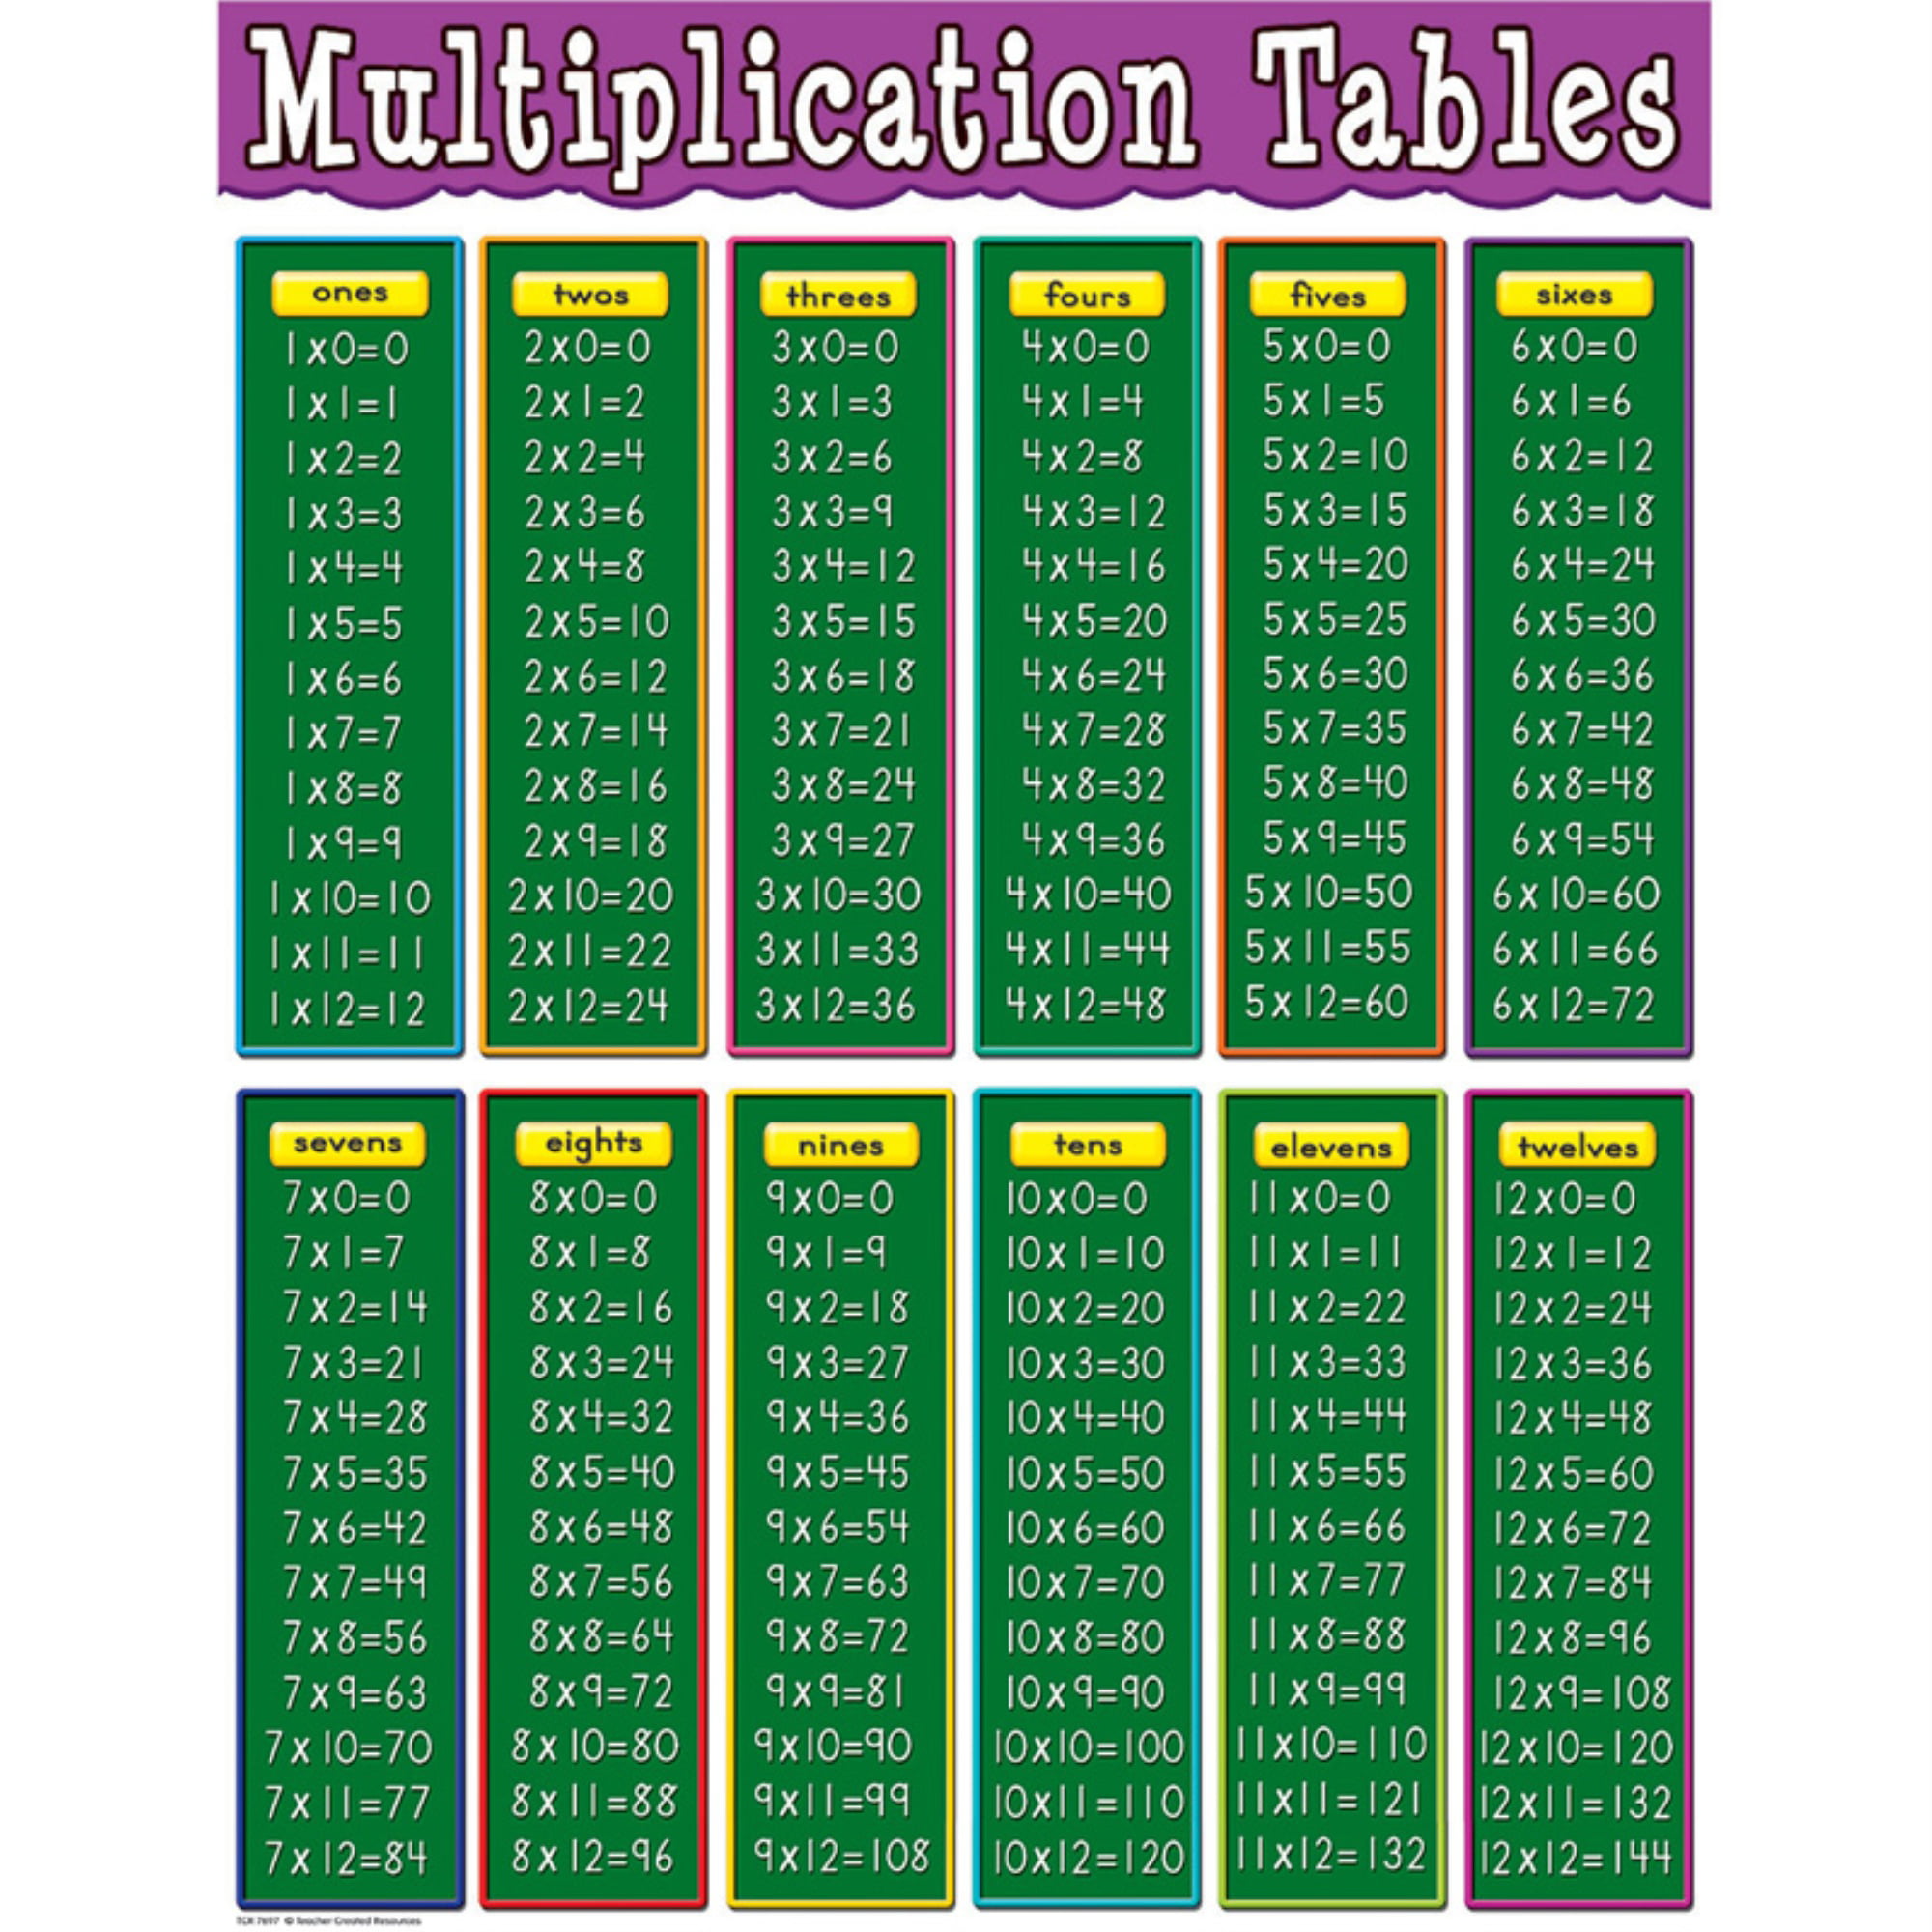 Carson Dellosa Multiplication Chart Card 5 1/4 Inch X 4 Inch 